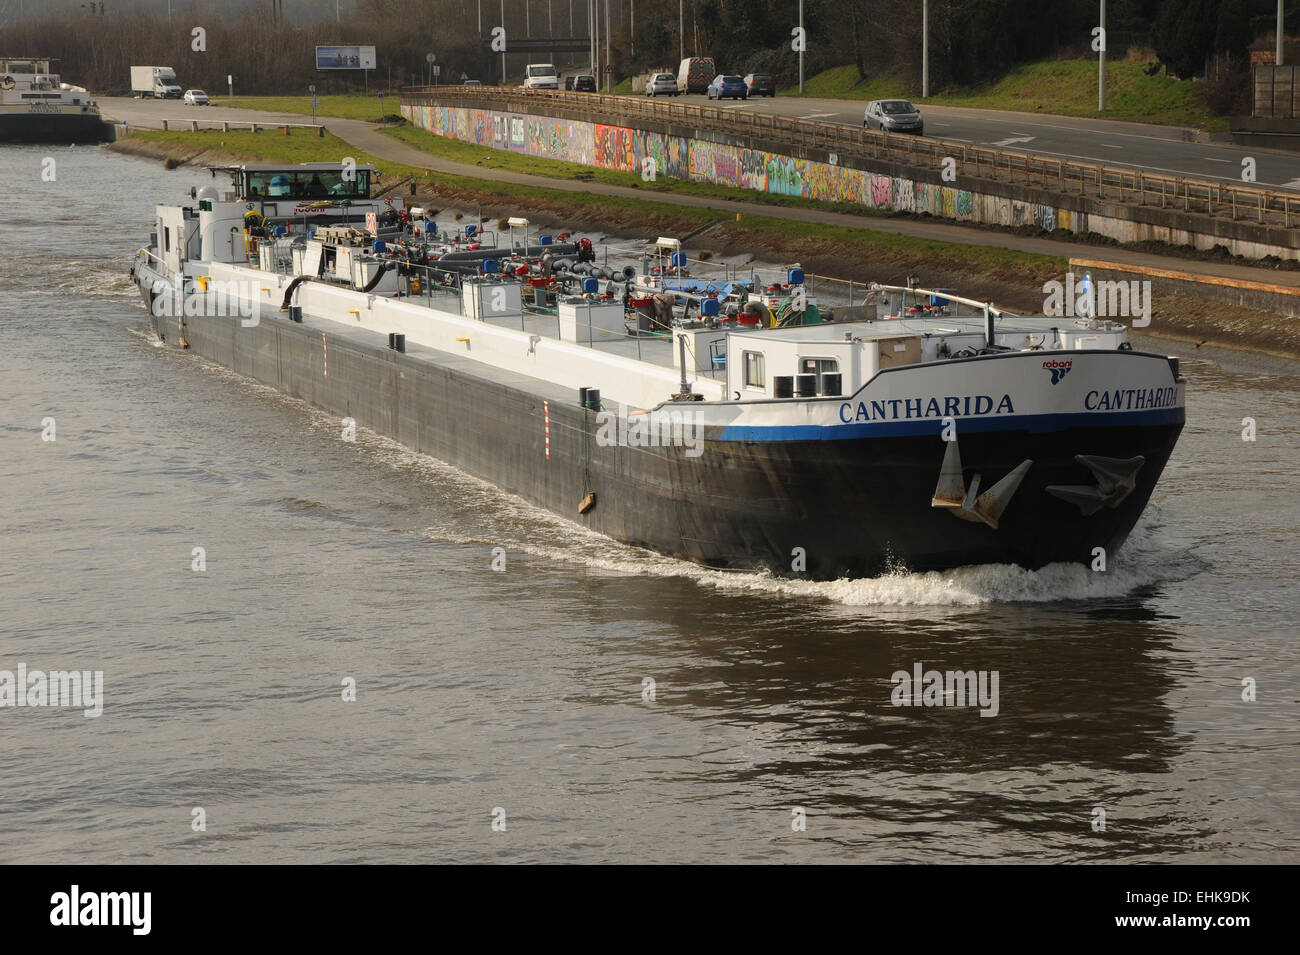 Una chiatta sul canale in corso sul canale principale vicino a Mons, Belgio. questa chiatta è una gara di combustibile, tipico delle navi da trasporto del trovato Foto Stock